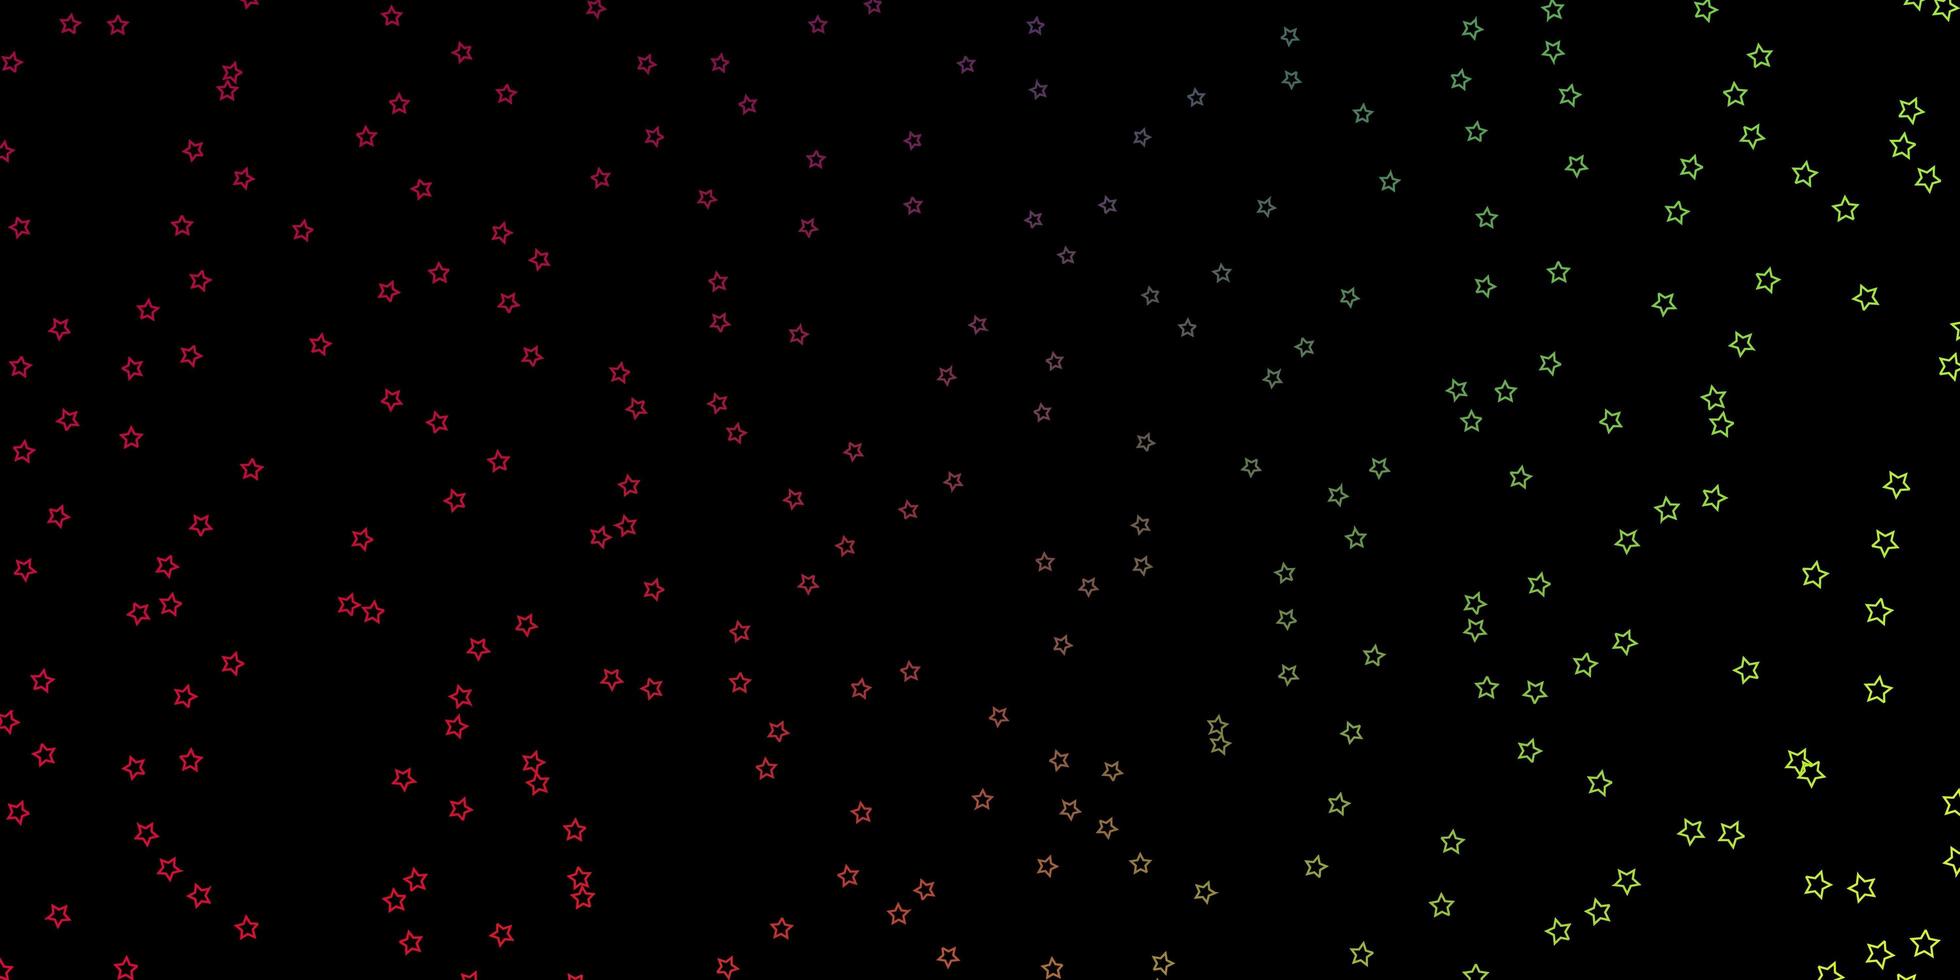 layout de vetor multicolorido escuro com estrelas brilhantes. ilustração abstrata geométrica moderna com estrelas. padrão para embrulhar presentes.